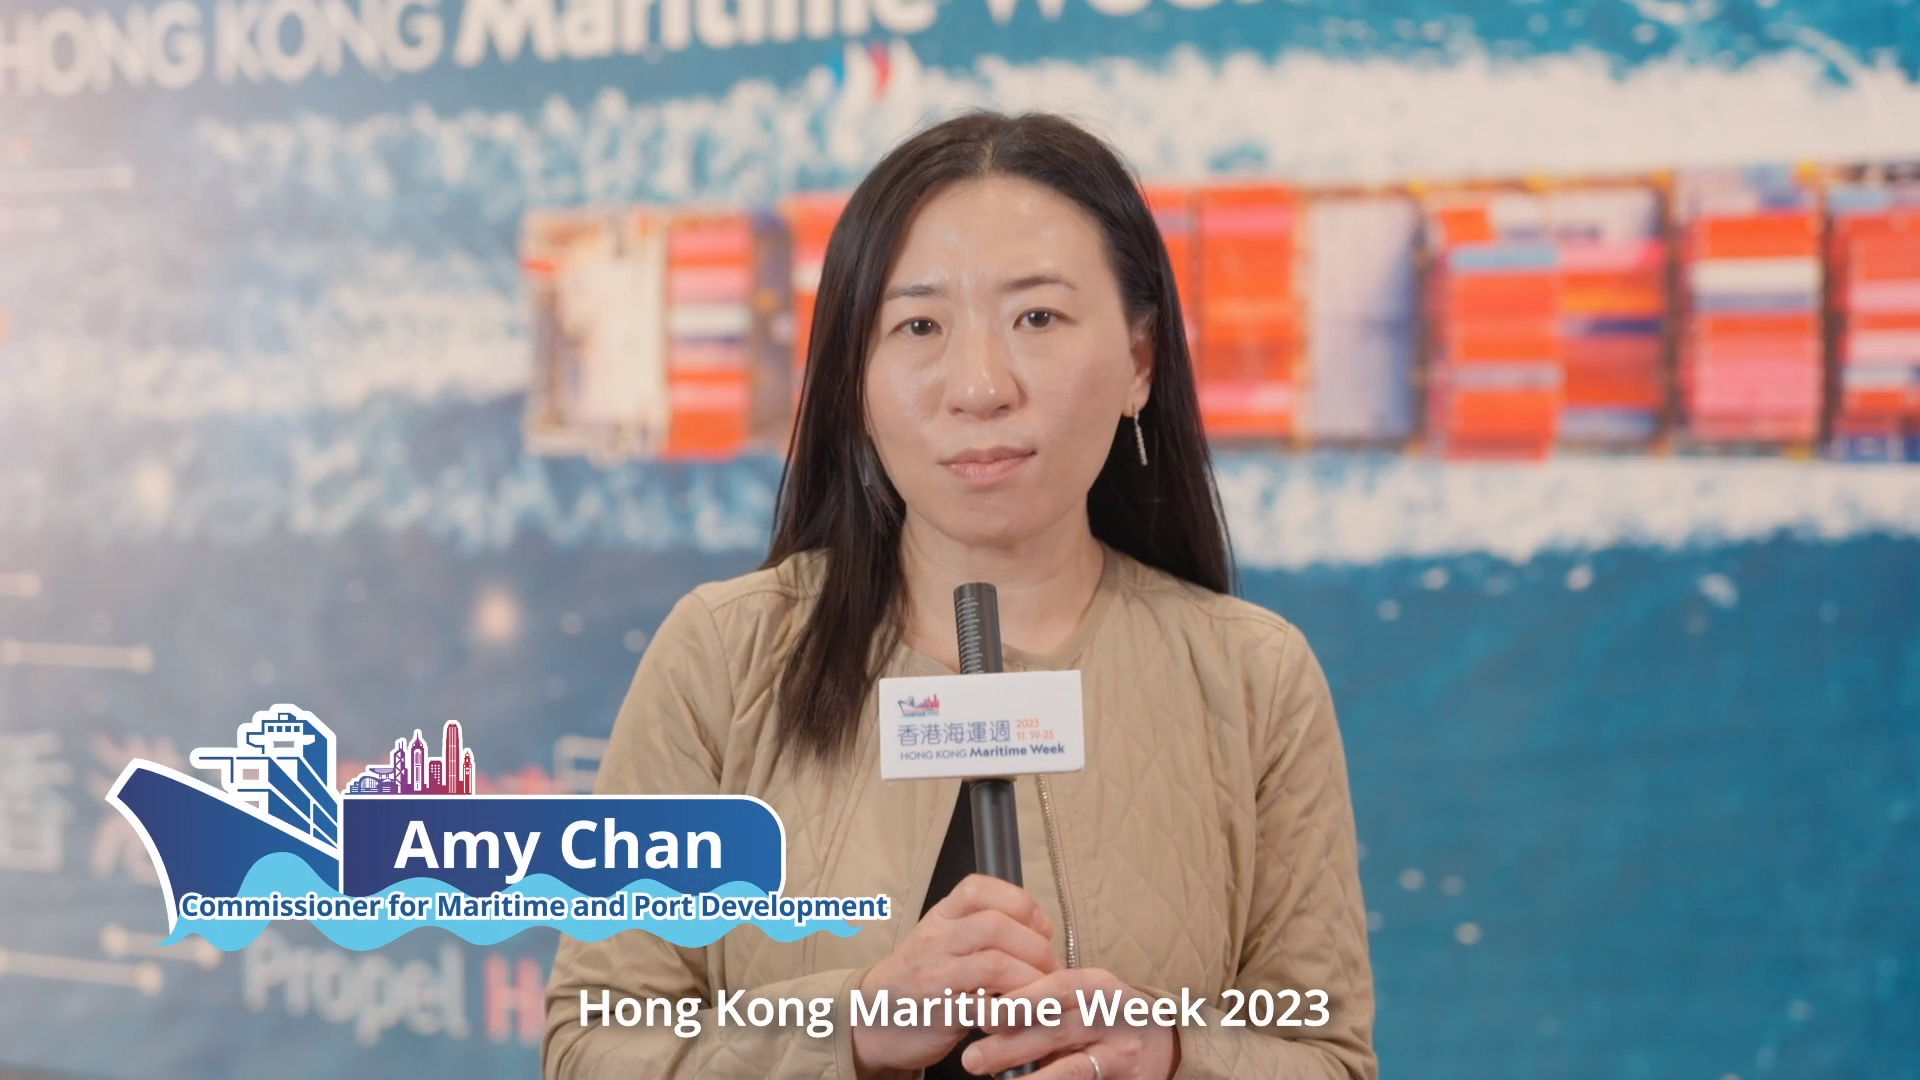 香港海運週2023 - 海運及港口發展專員陳婉雯女士 (只有英文)